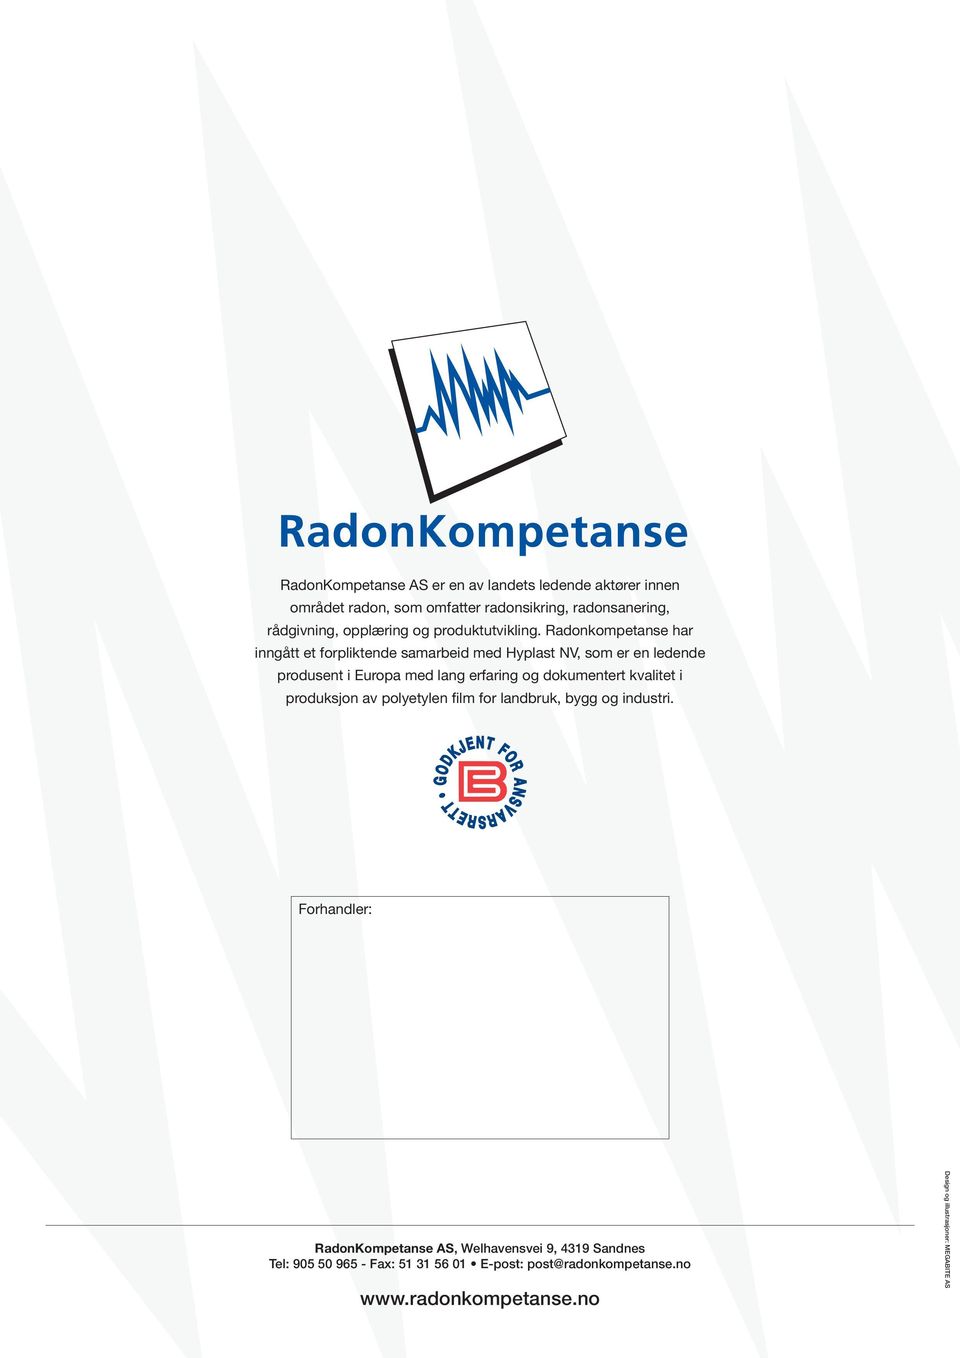 Radonkompetanse har inngått et forpliktende samarbeid med Hyplast NV, som er en ledende produsent i Europa med lang erfaring og dokumentert